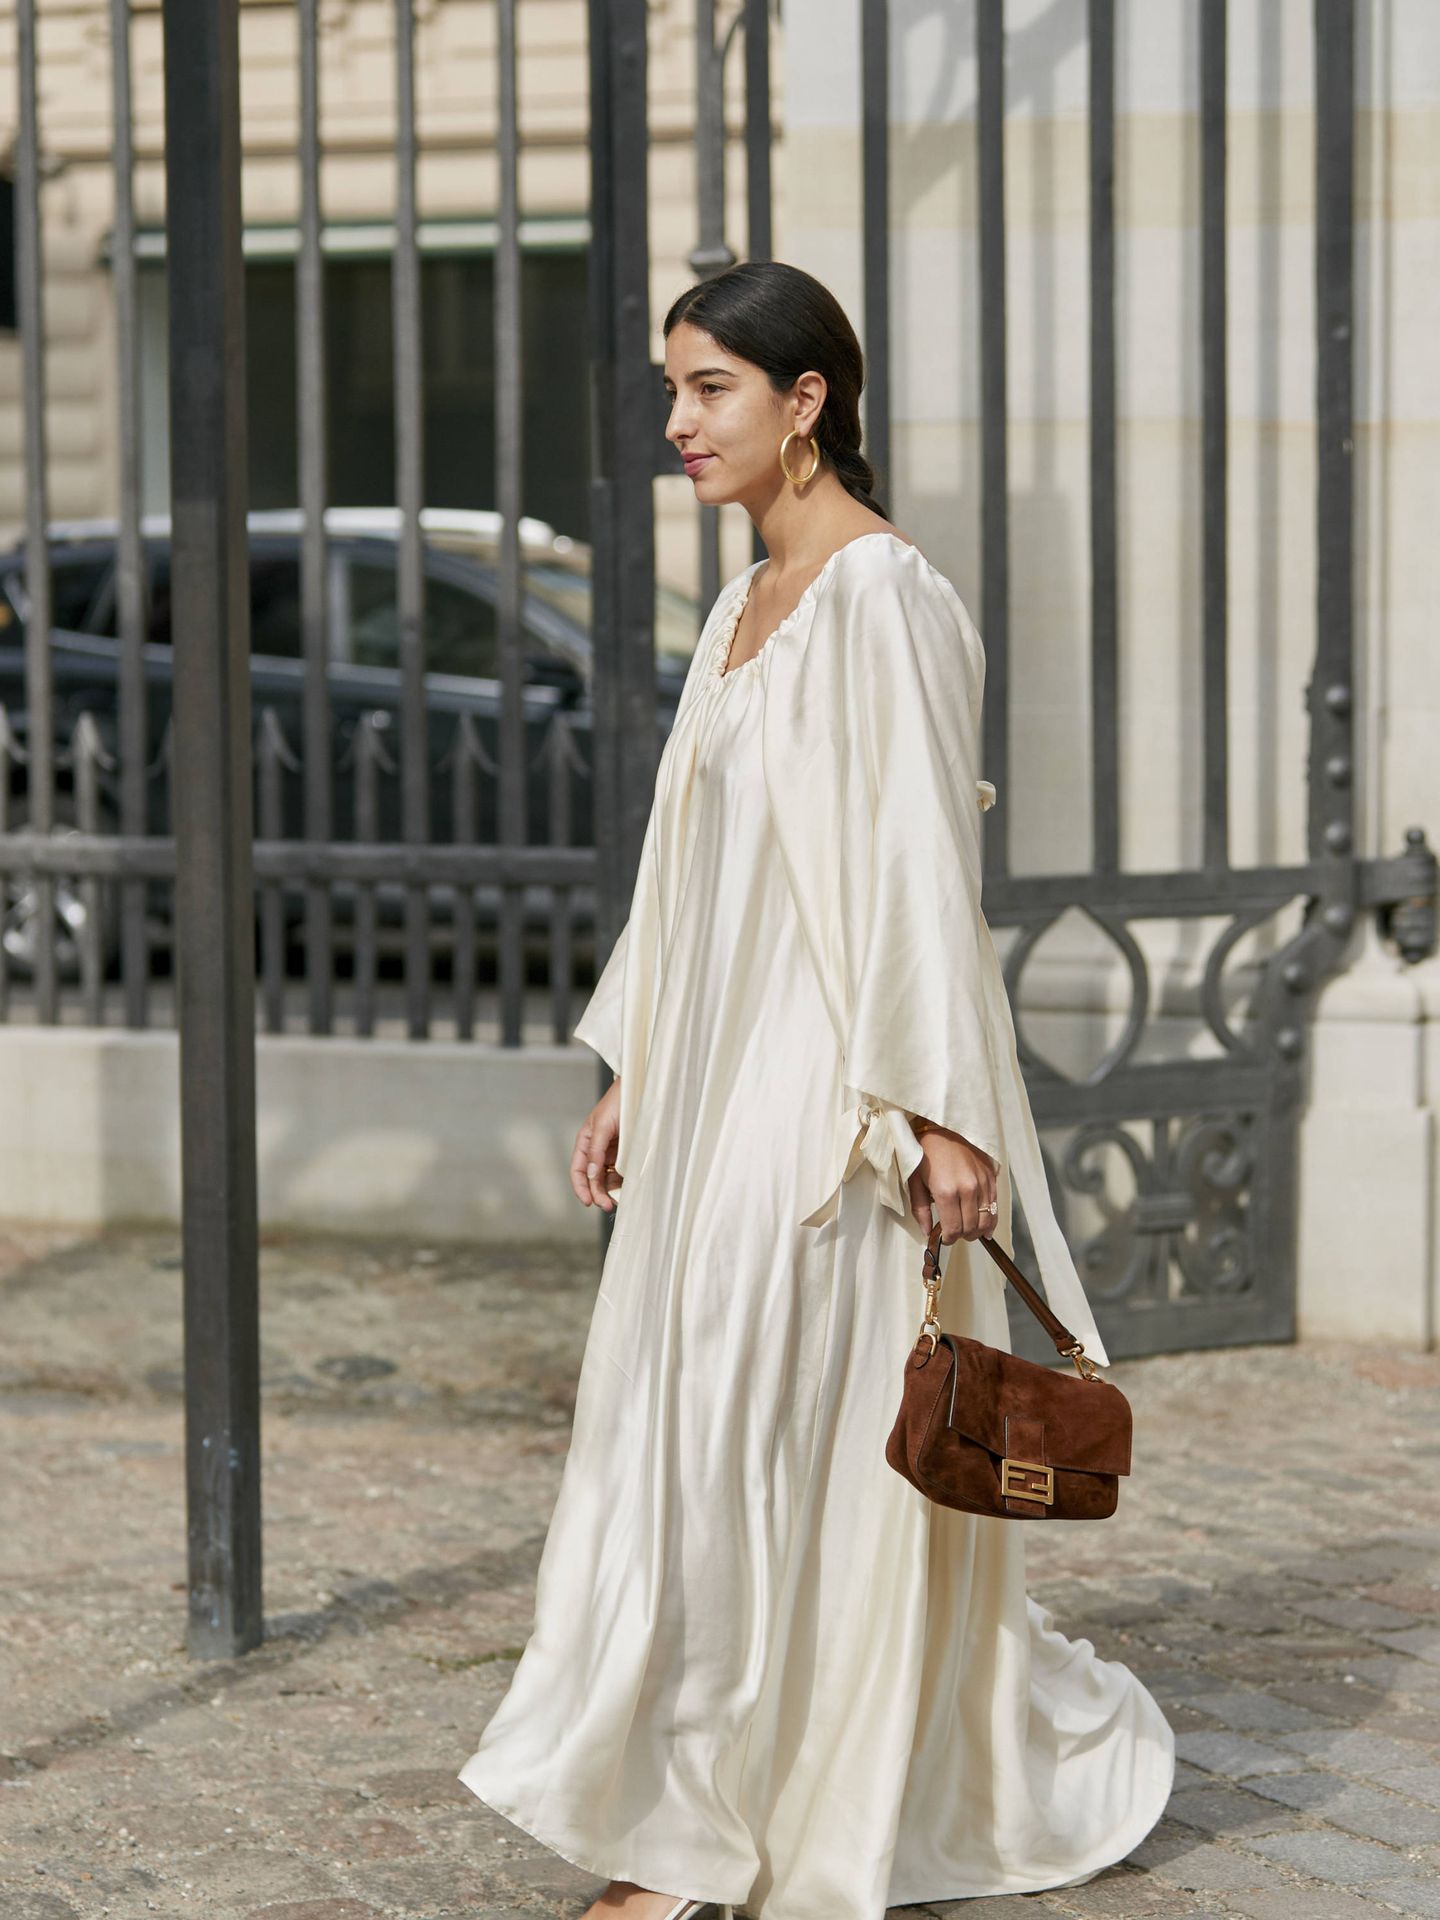 Descriptivo proporción Negligencia Manual de uso del nuevo vestido blanco en 10 lookazos vistos en las calles